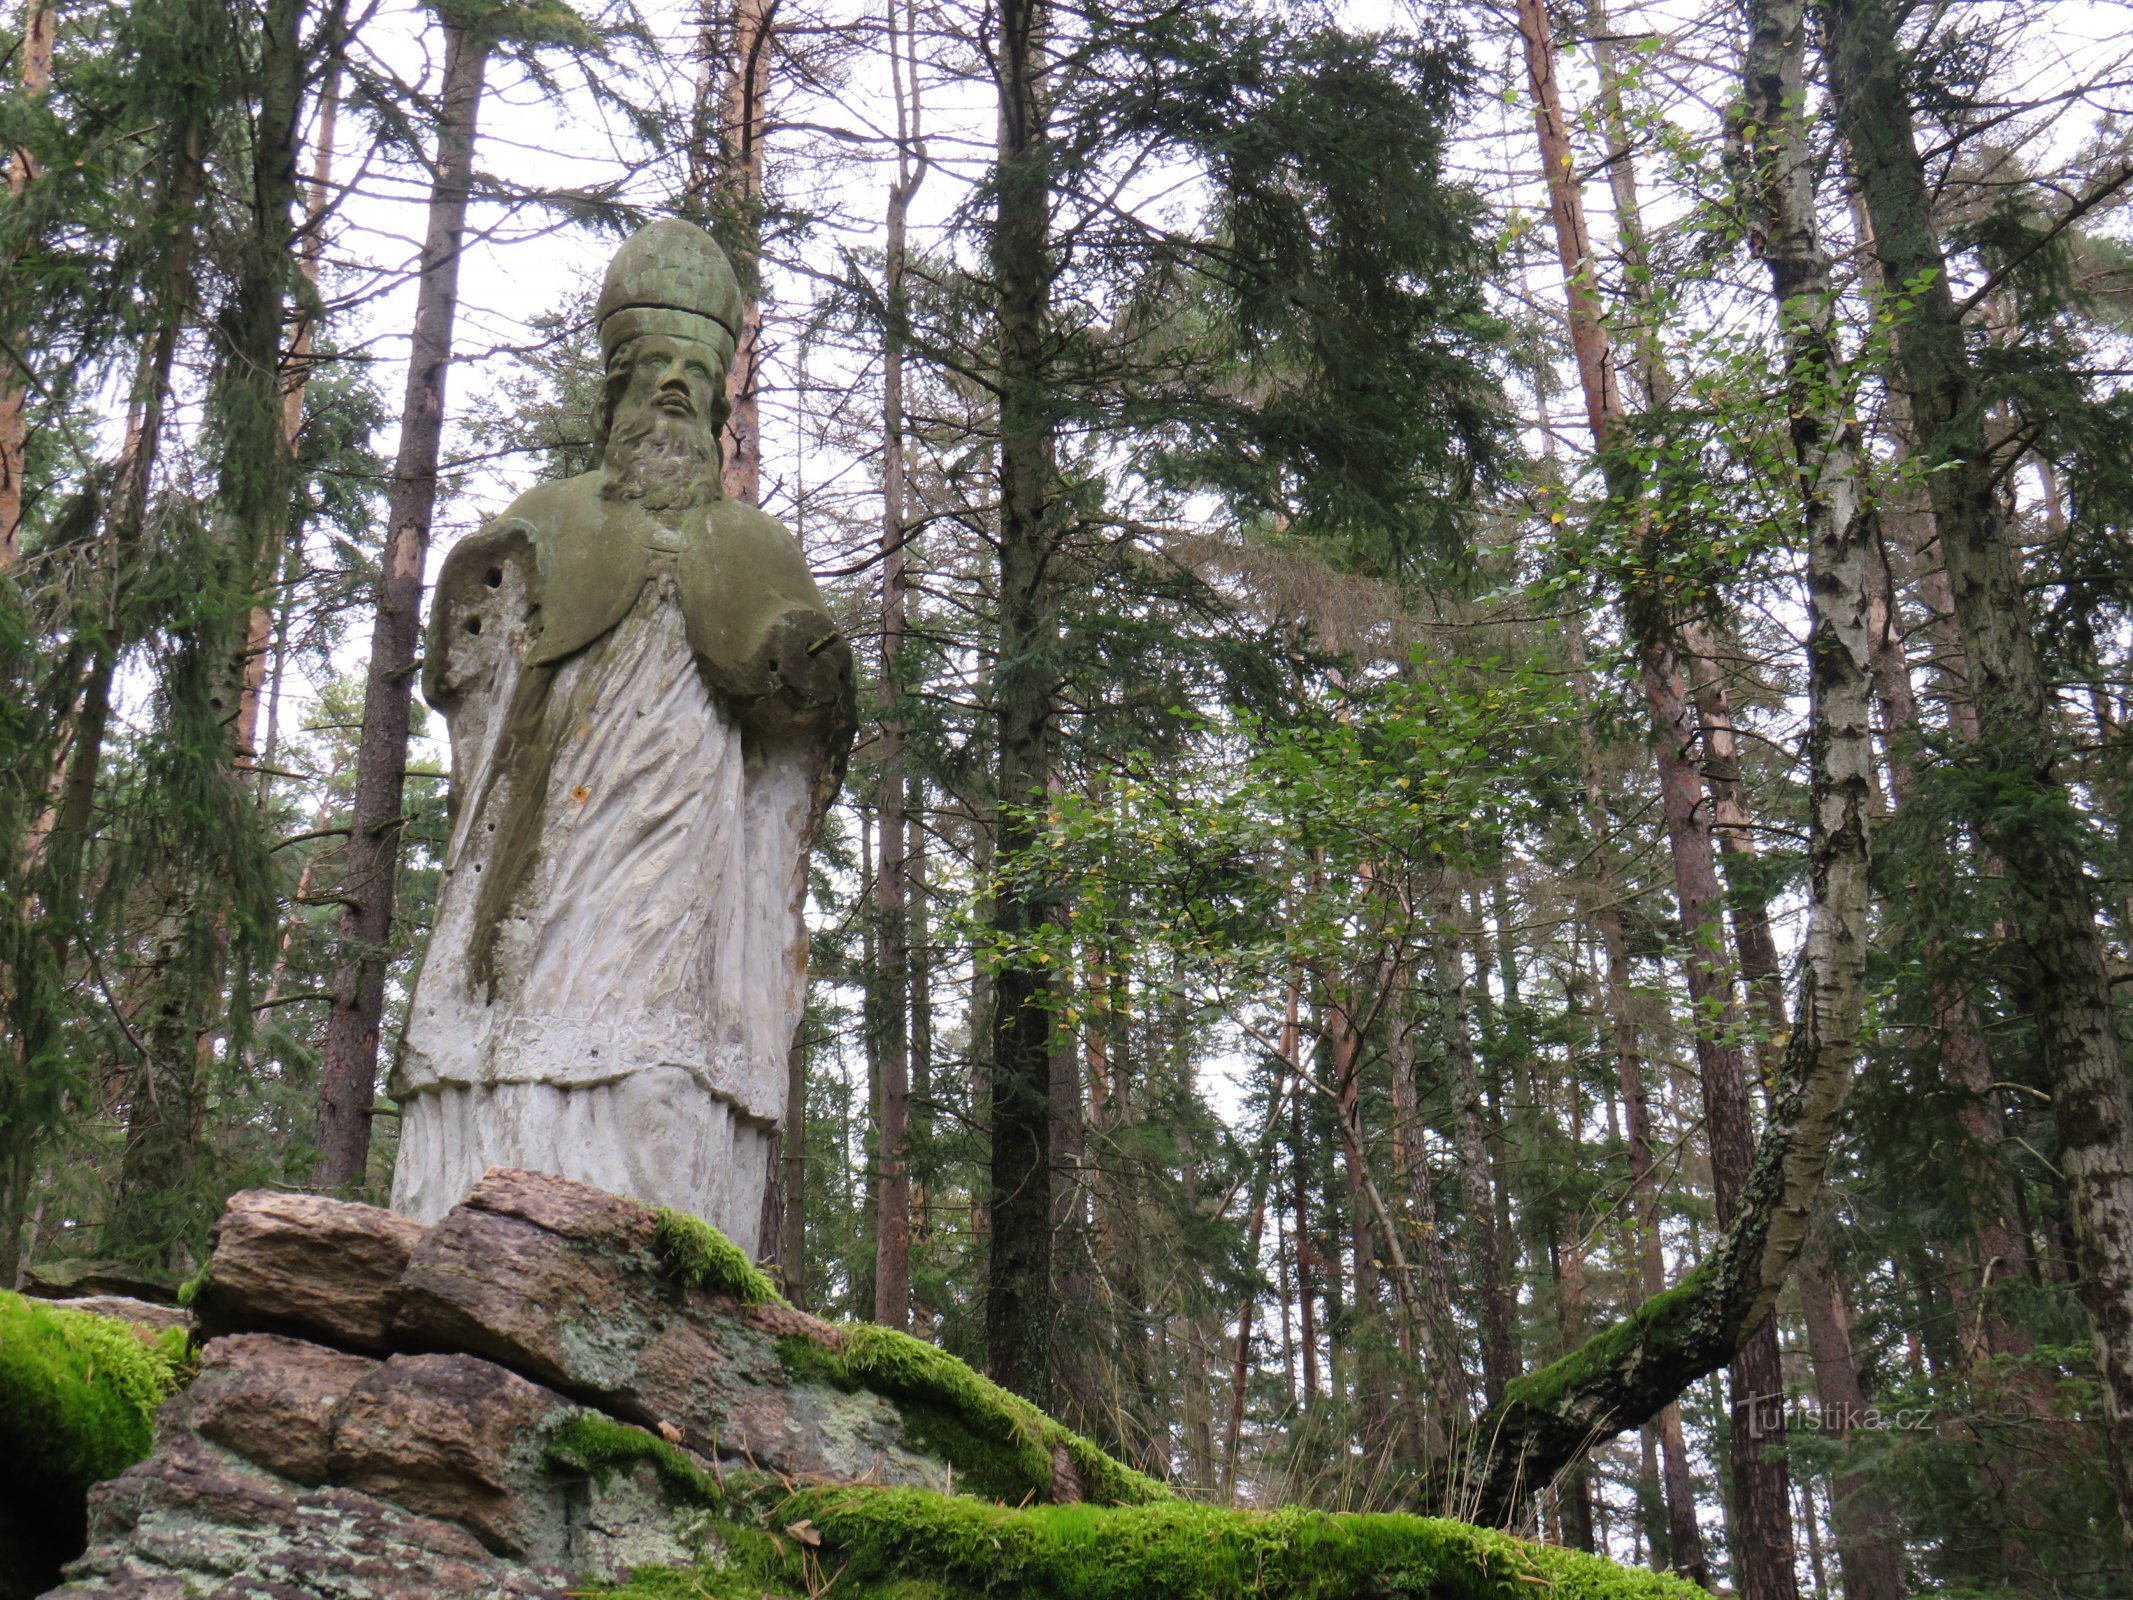 聖母像の捜索。 オシクのスタニスラフ